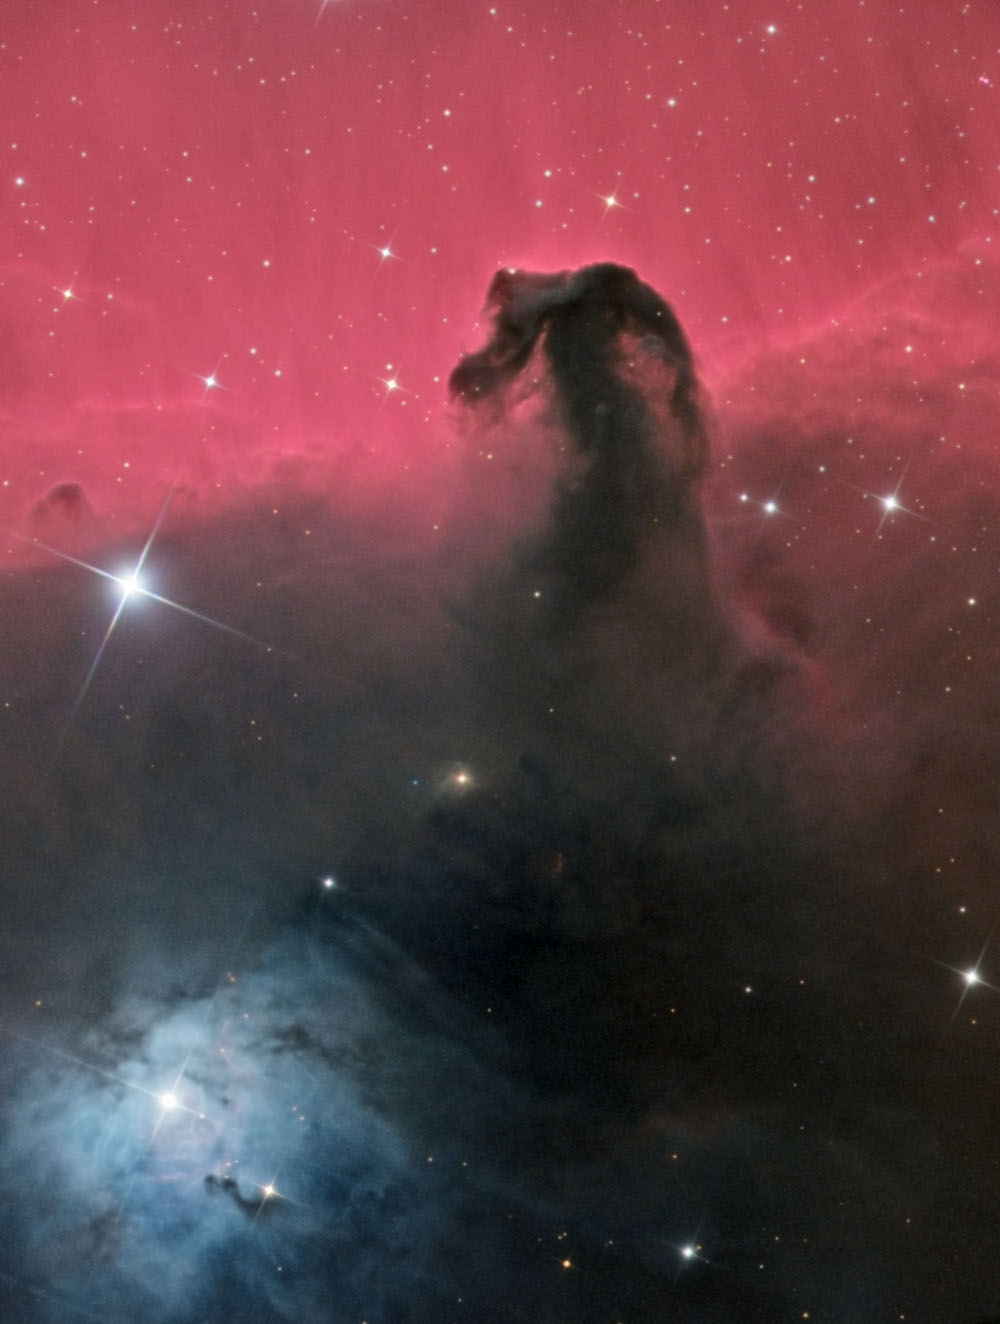 nebula ic 434